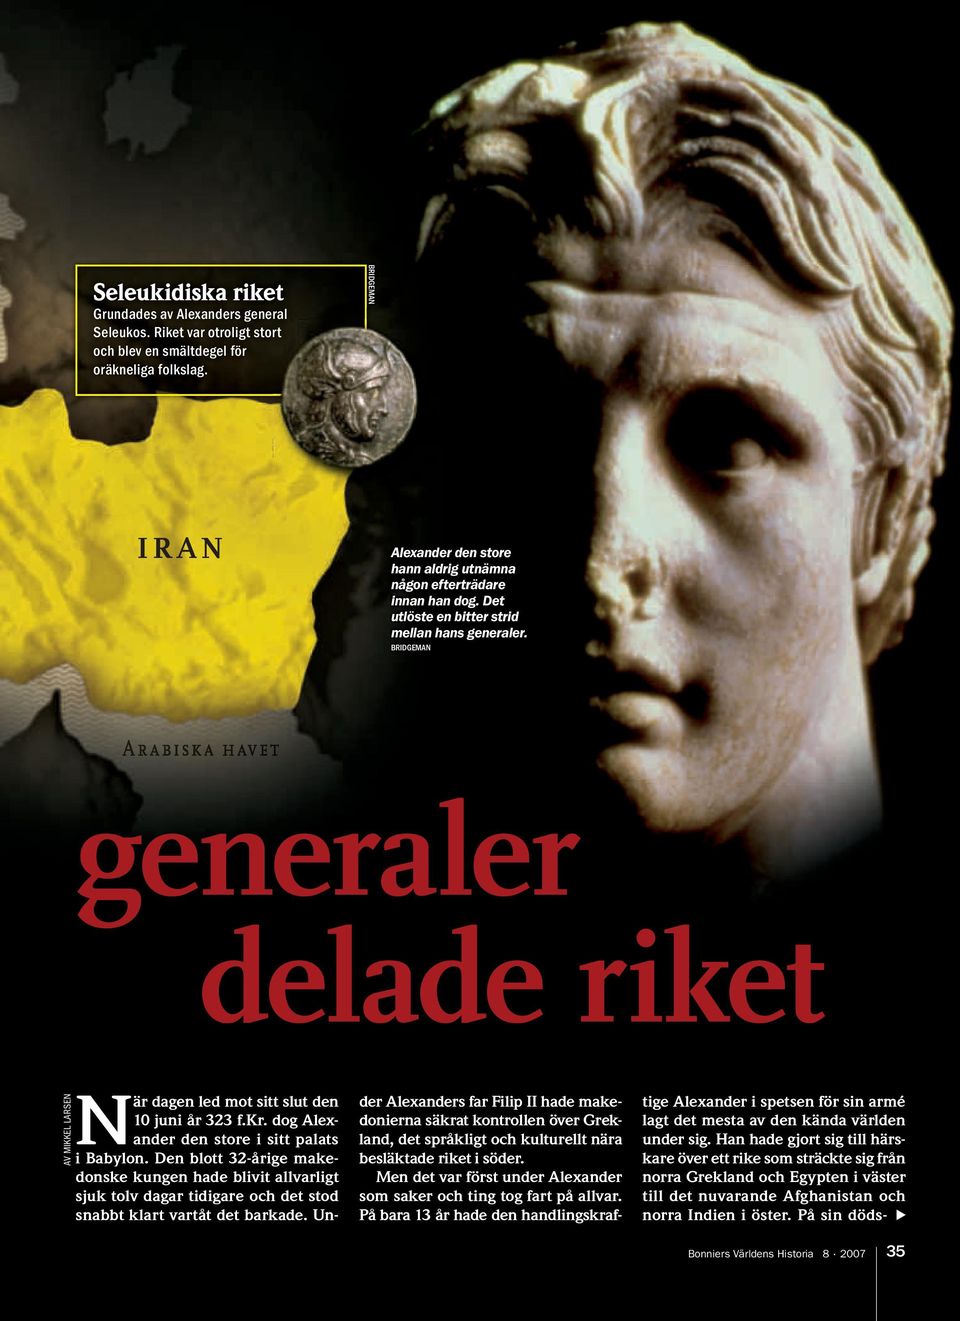 BRIDGEMAN generaler delade riket AV MIKKEL LARSEN När dagen led mot sitt slut den 10 juni år 323 f.kr. dog Alexander den store i sitt palats i Babylon.